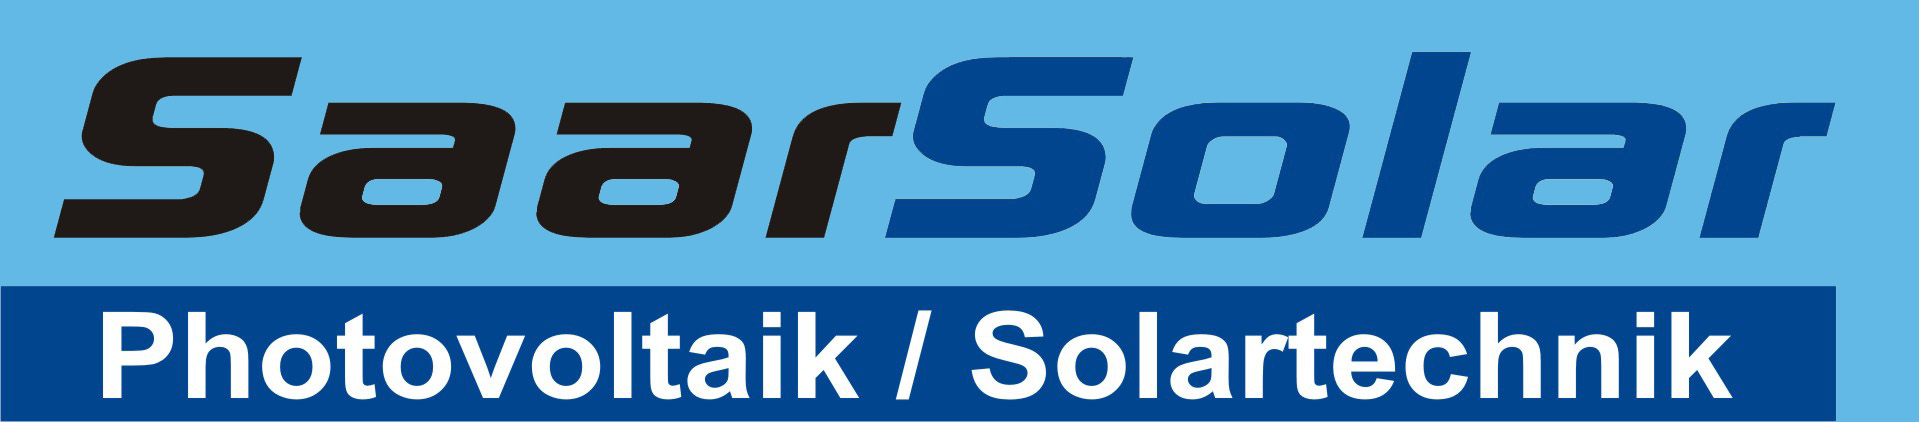 SaarSolar - Photovoltaik und Solartechnik